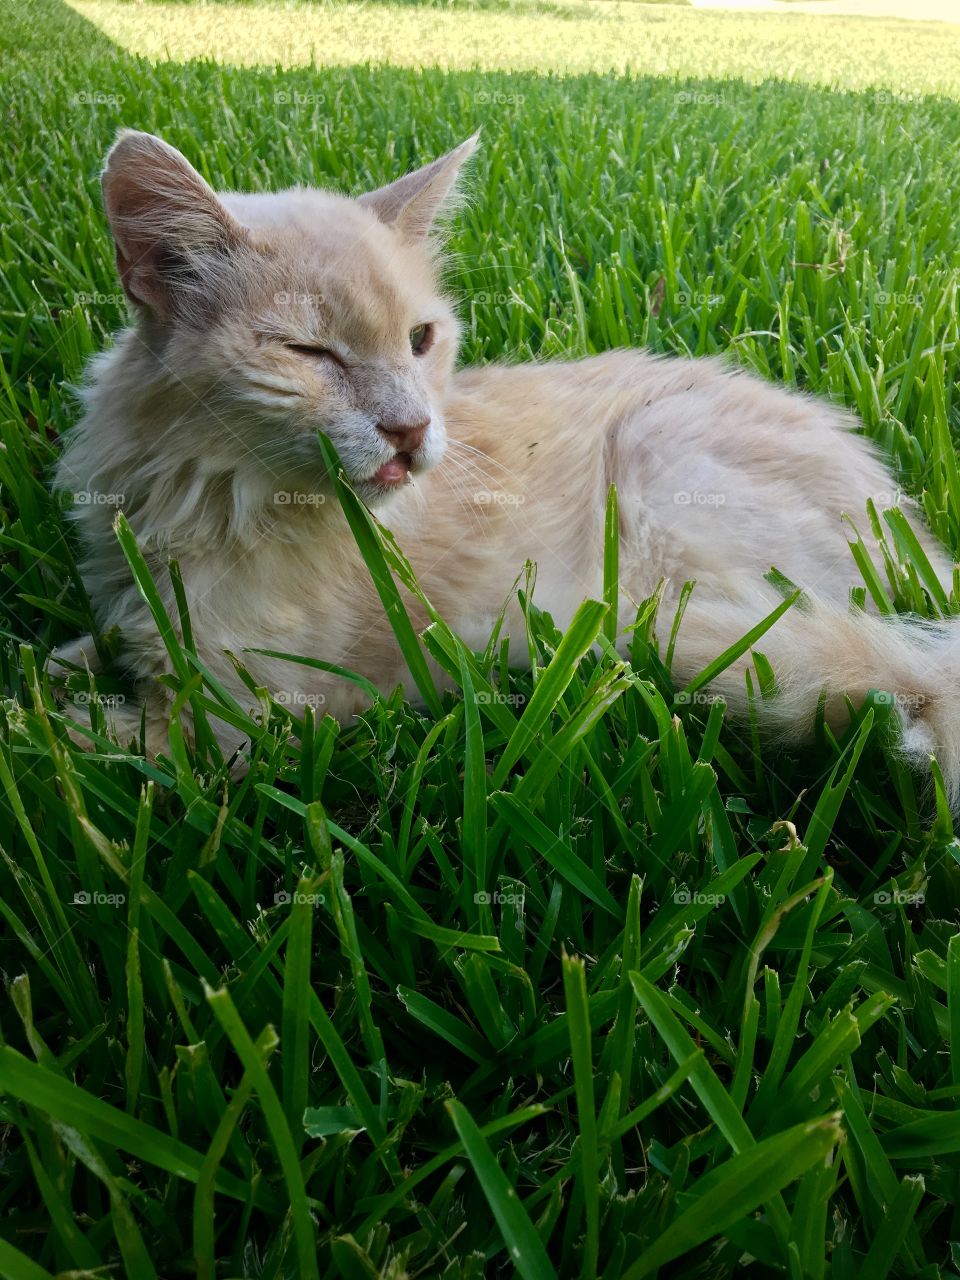 Enjoying his summer grass 